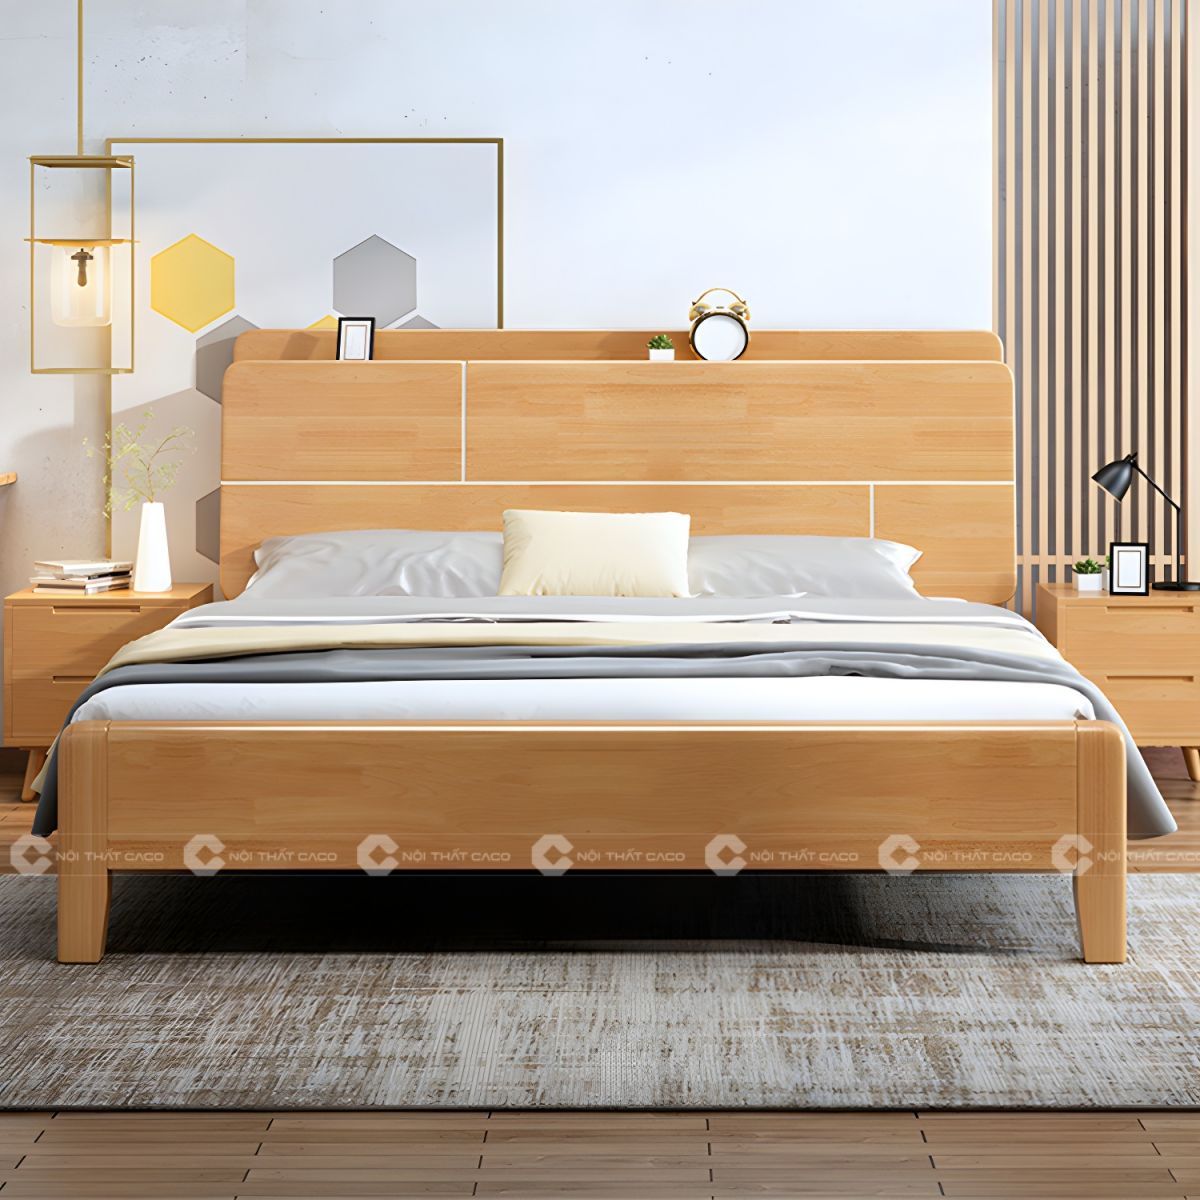 Giường ngủ gỗ tự nhiên thanh lịch tinh tế